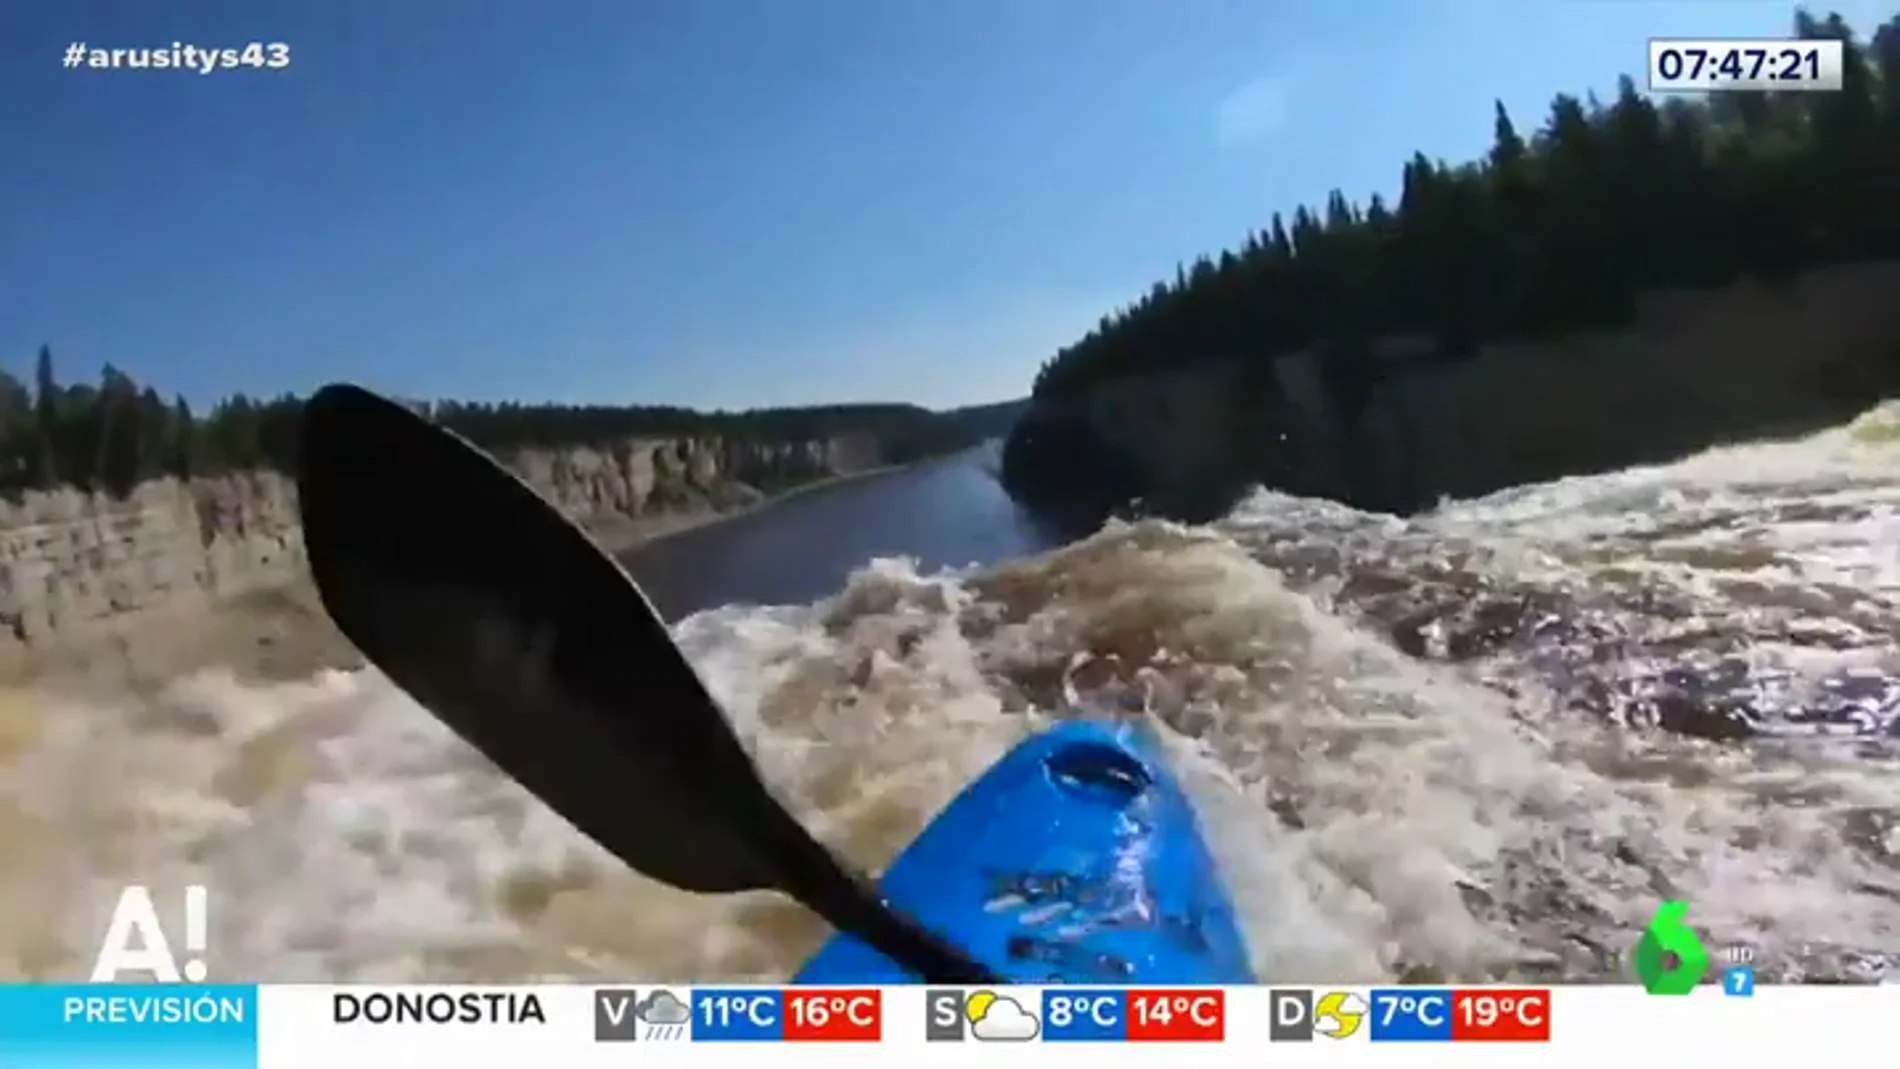 La espectacular caída de un hombre en kayak por una cascada de más de 30 metros